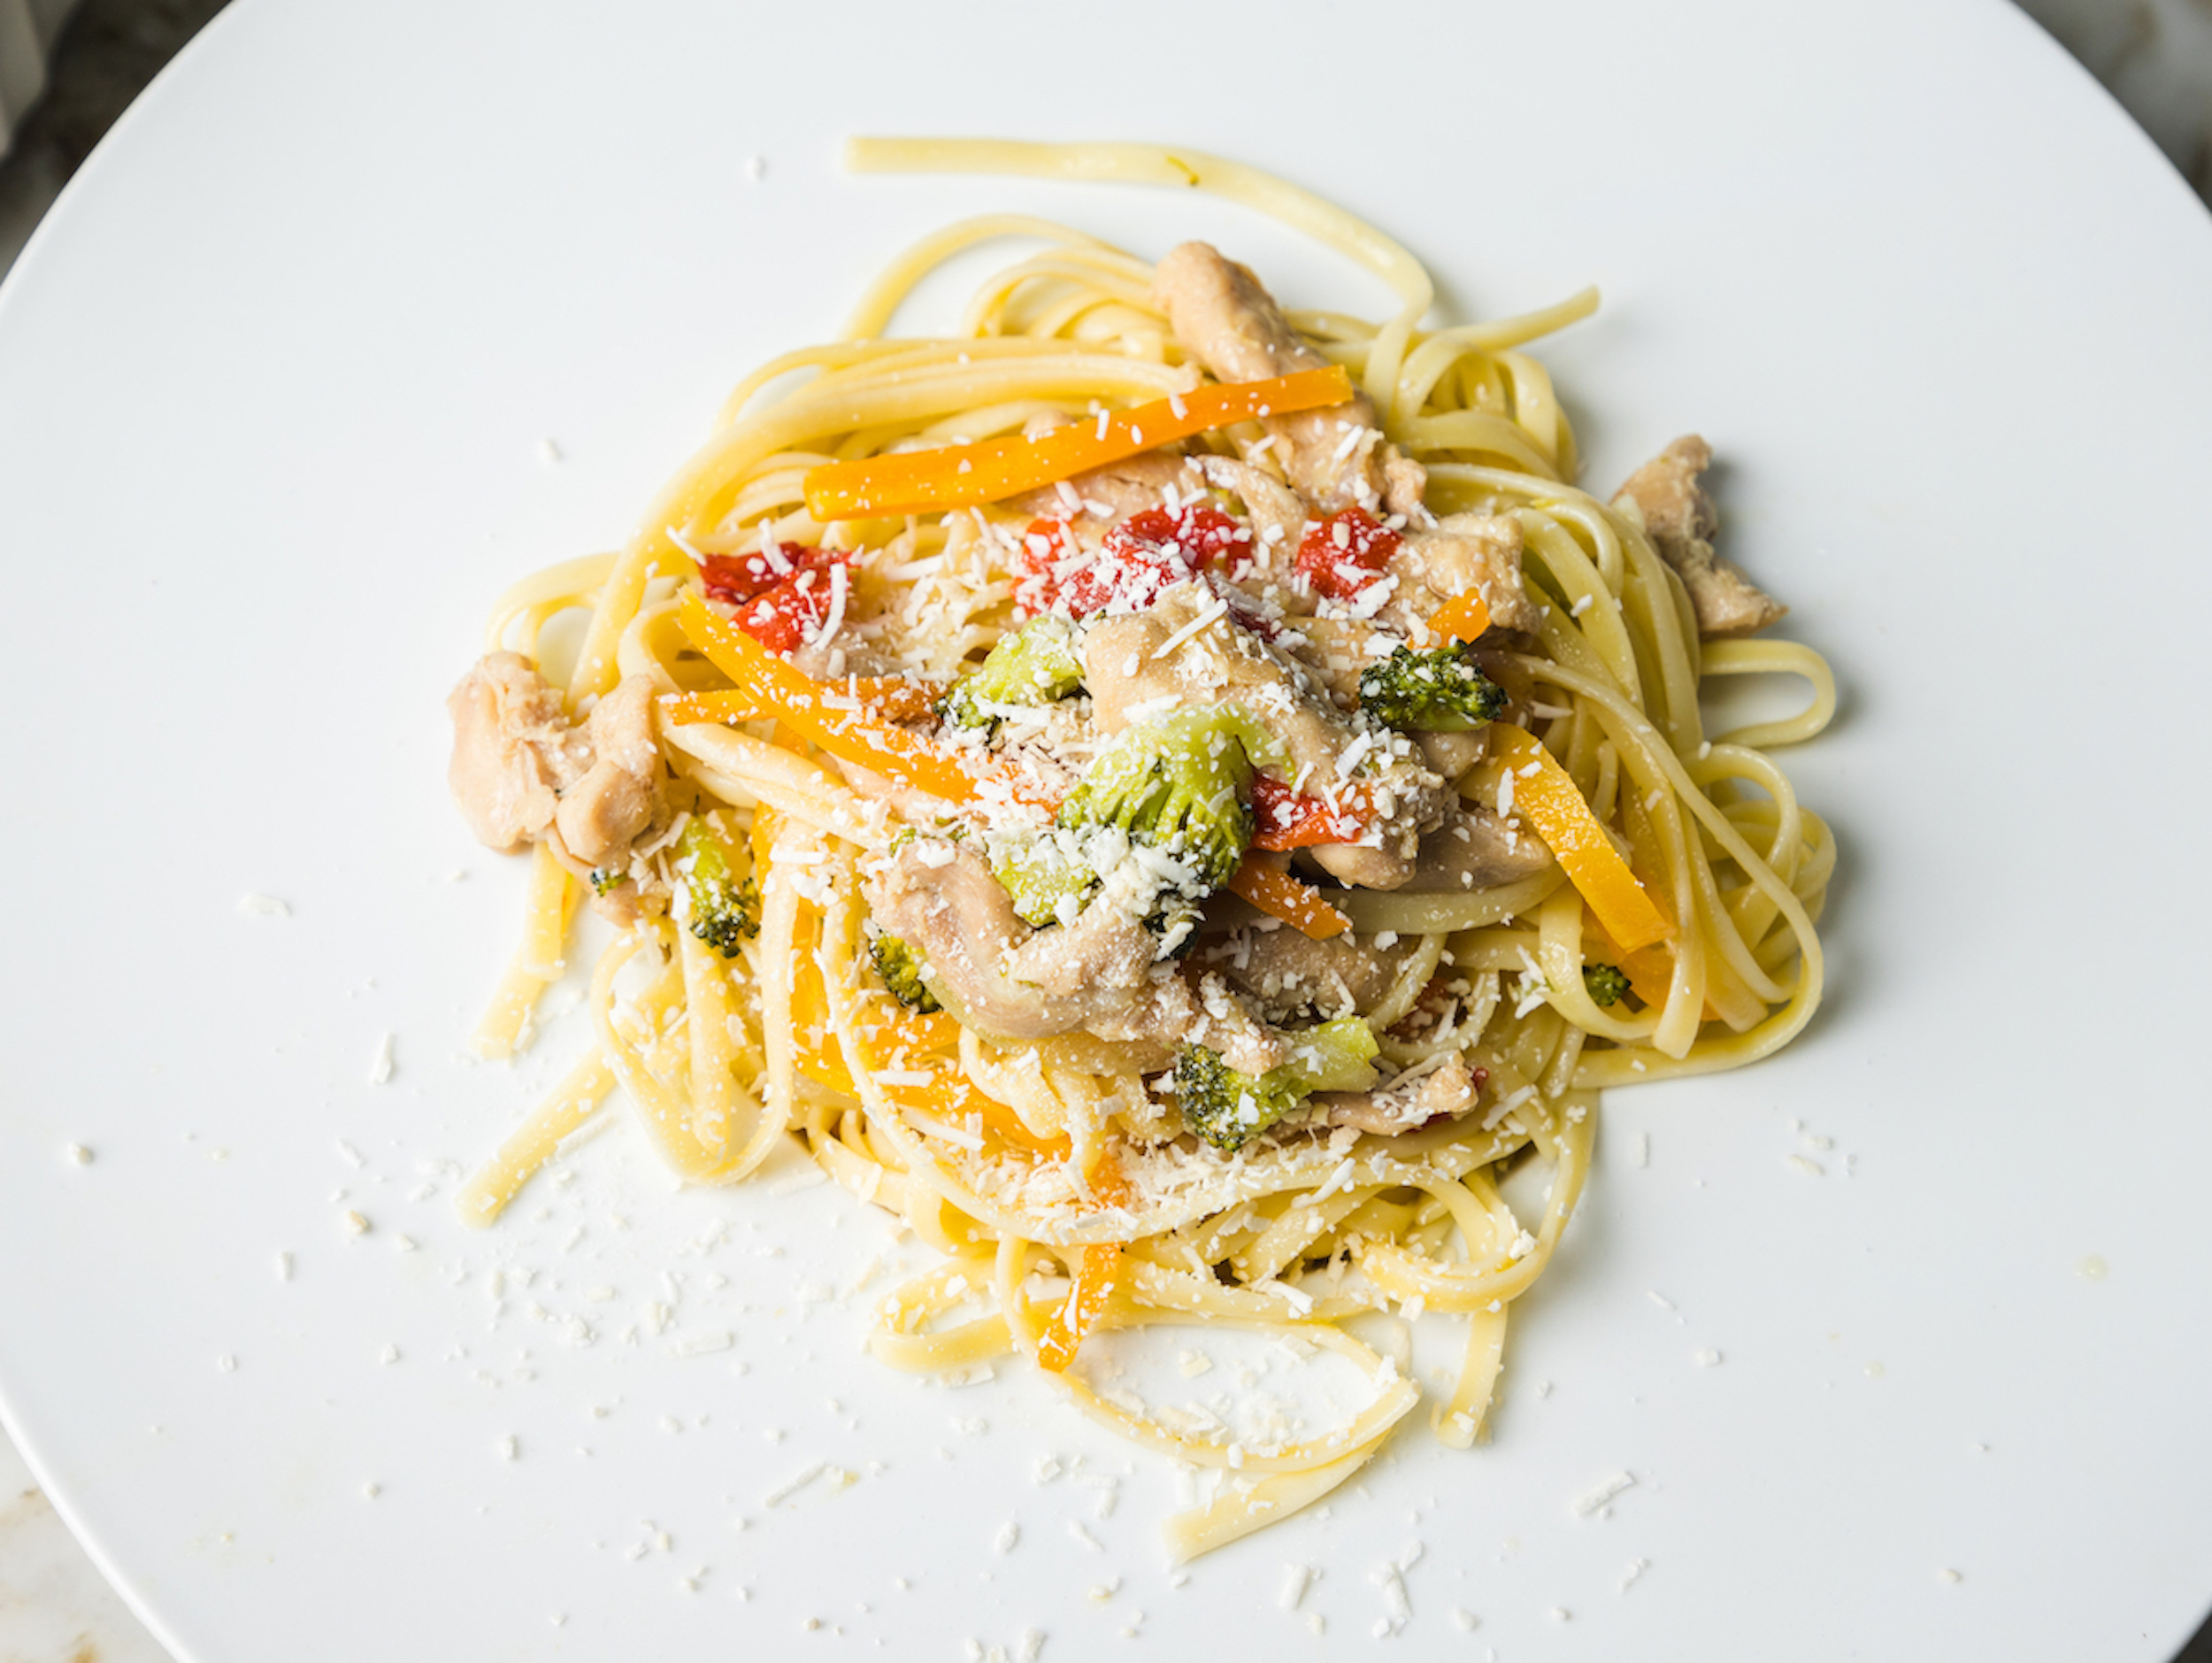 Spaghetti Sumesa con pollo y vegetales